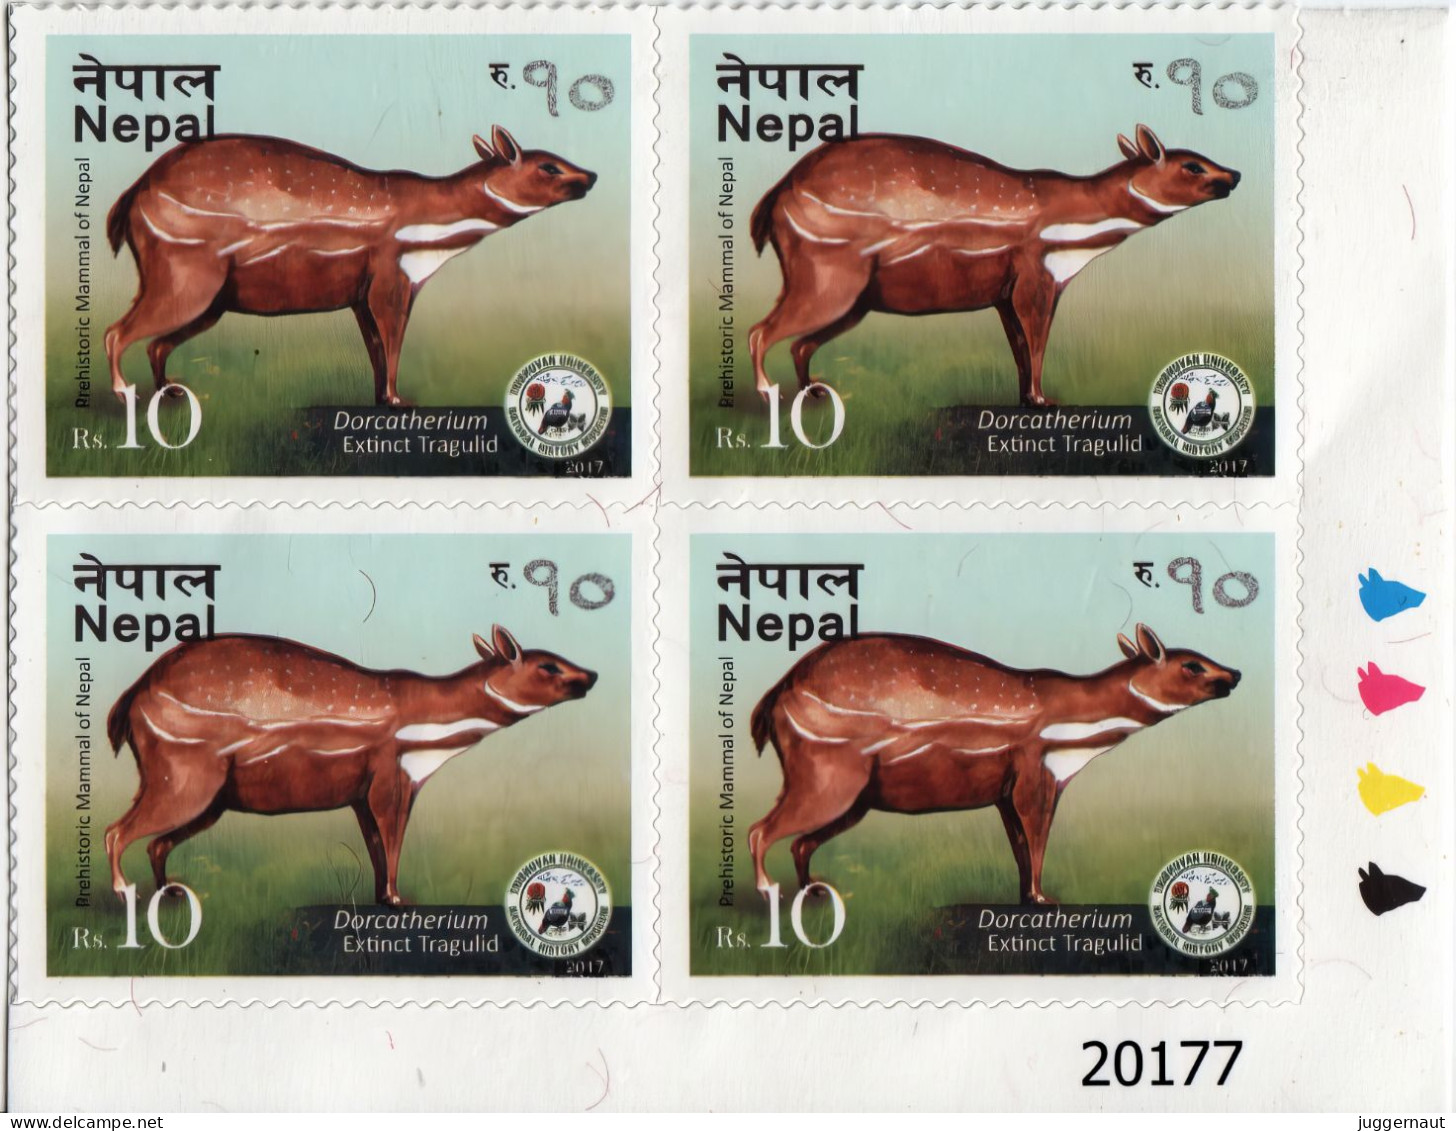 Extinct Tragulid Adhesive Postage Stamp Traffic Lights Block 2017 Nepal MNH - Game